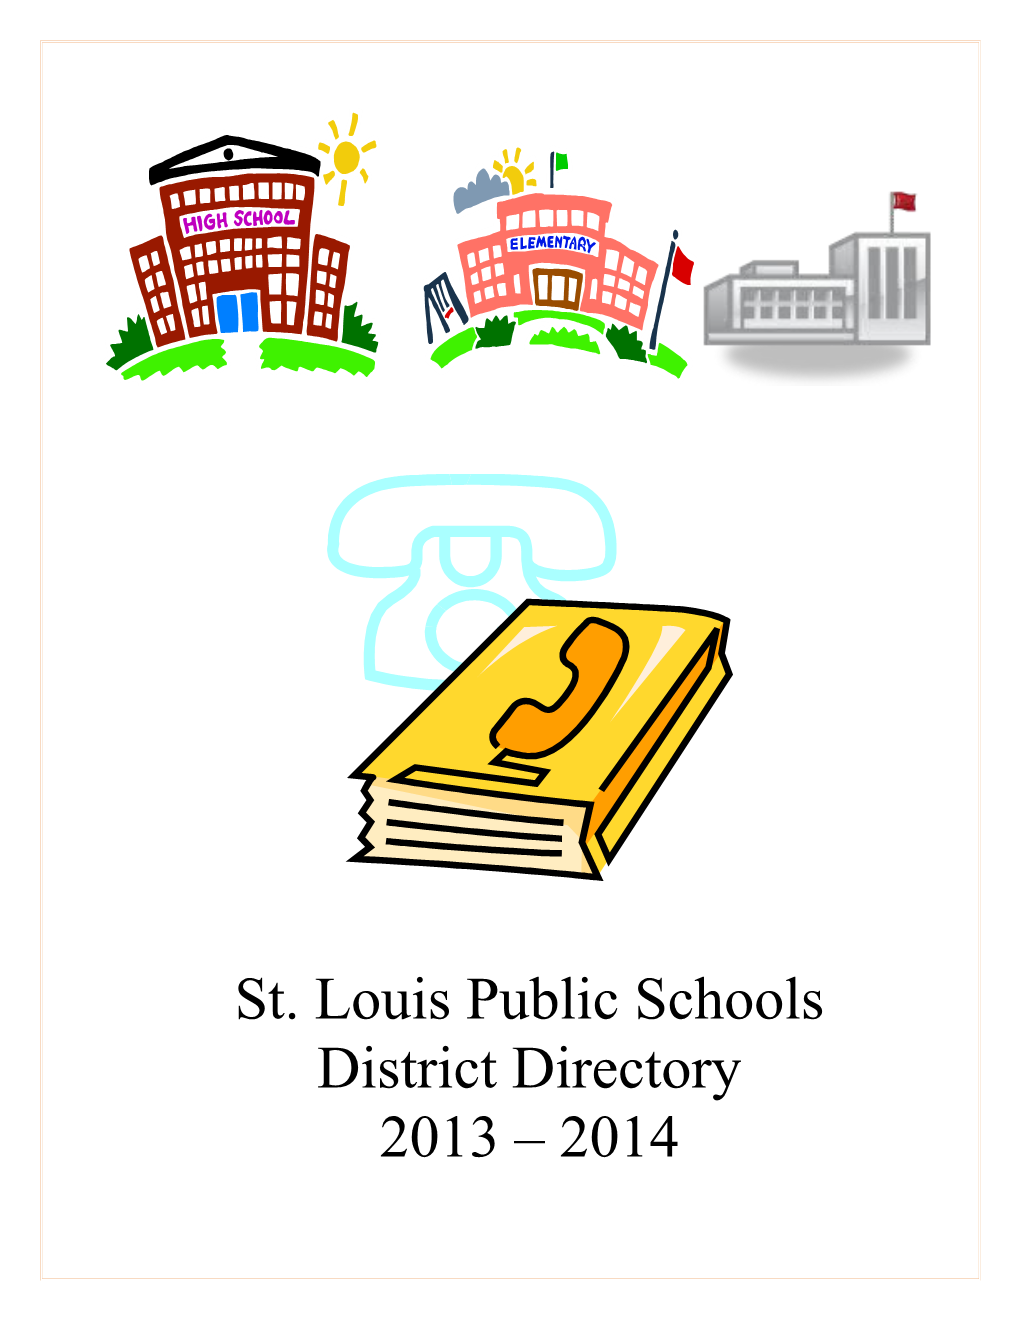 St. Louis Public Schools Directory- 2013-2014